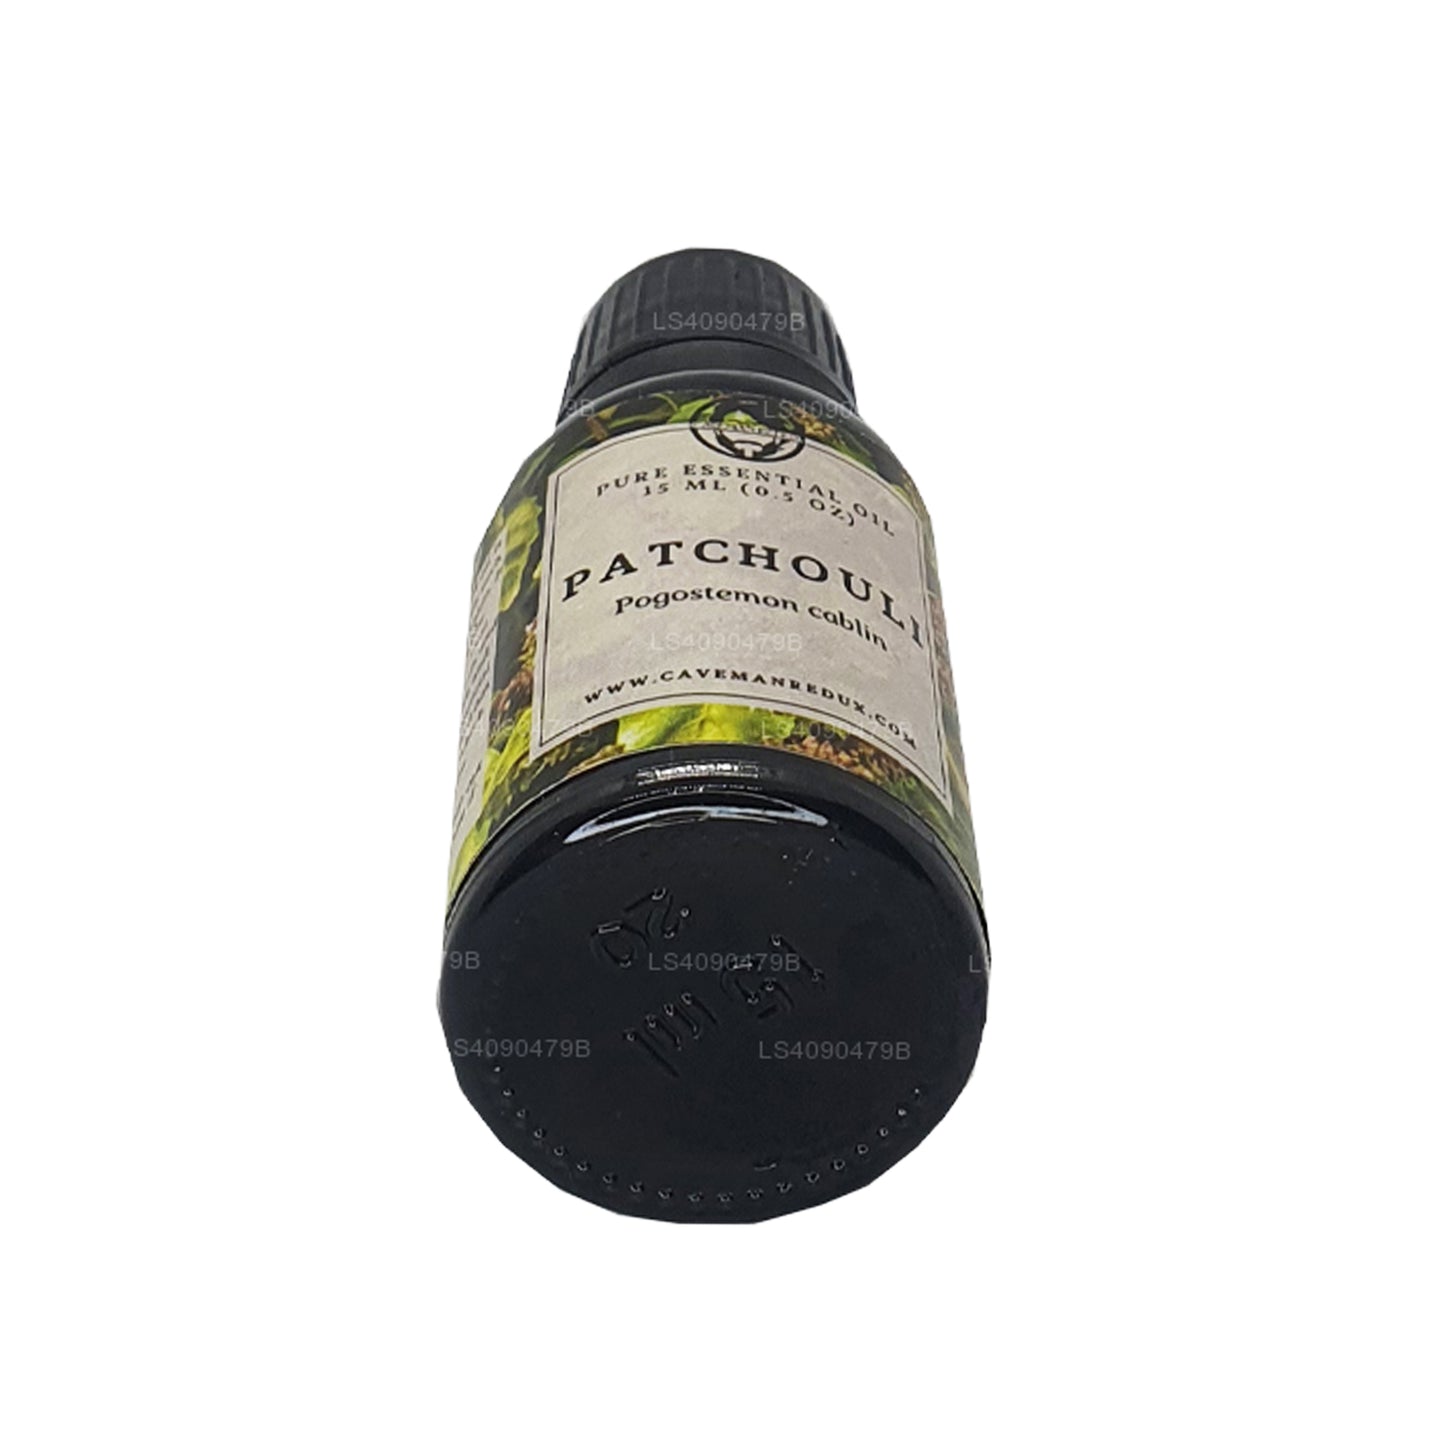 Lakpura Patchouli etherische olie (15 ml)